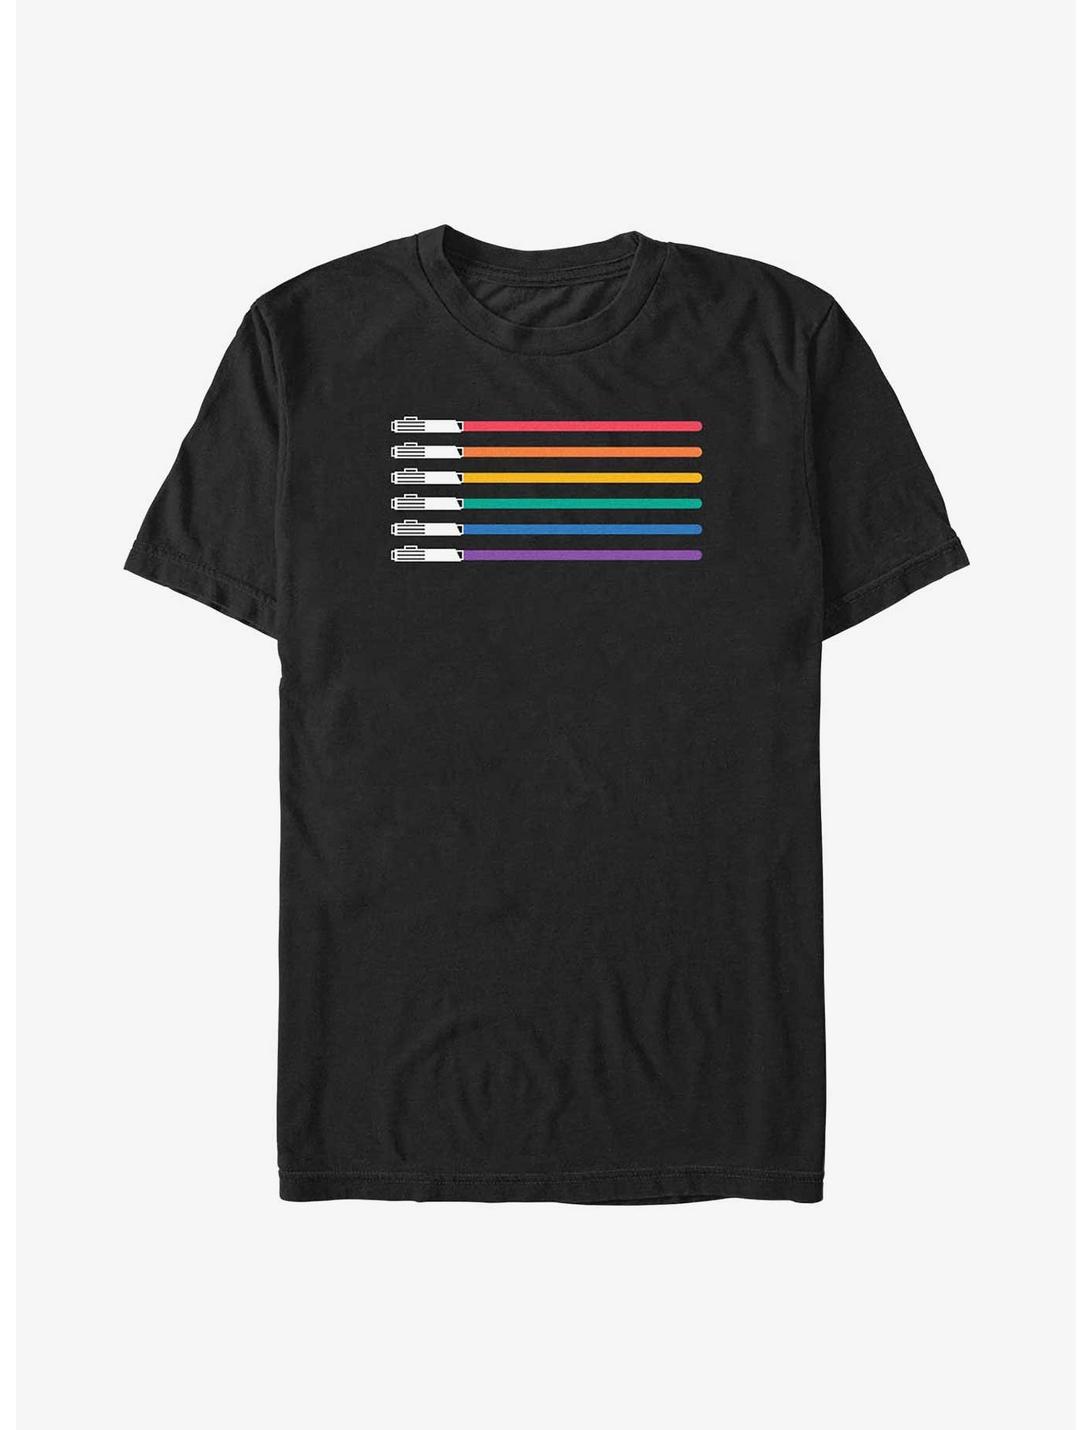 Star Wars Lightsaber Pride Flag Big & Tall T-Shirt, BLACK, hi-res